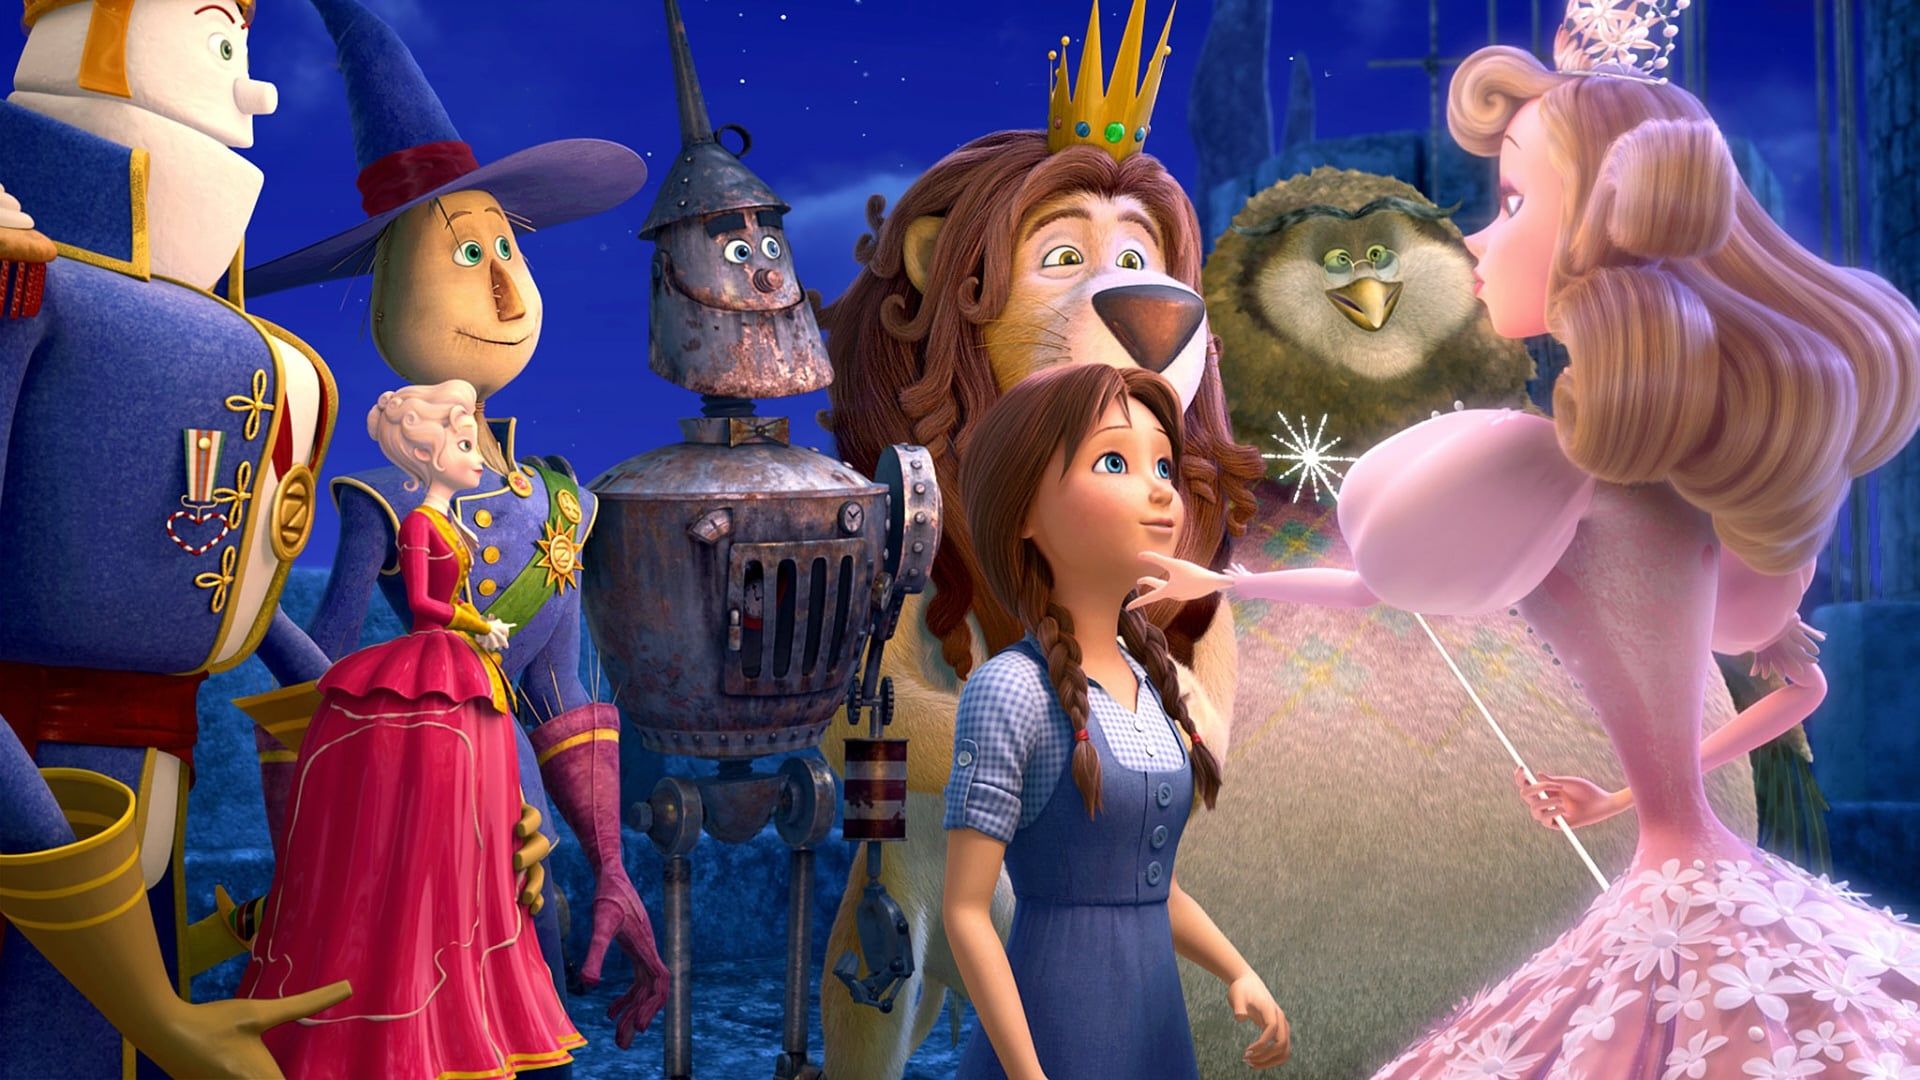 Legends of Oz: Dorothy's Return background